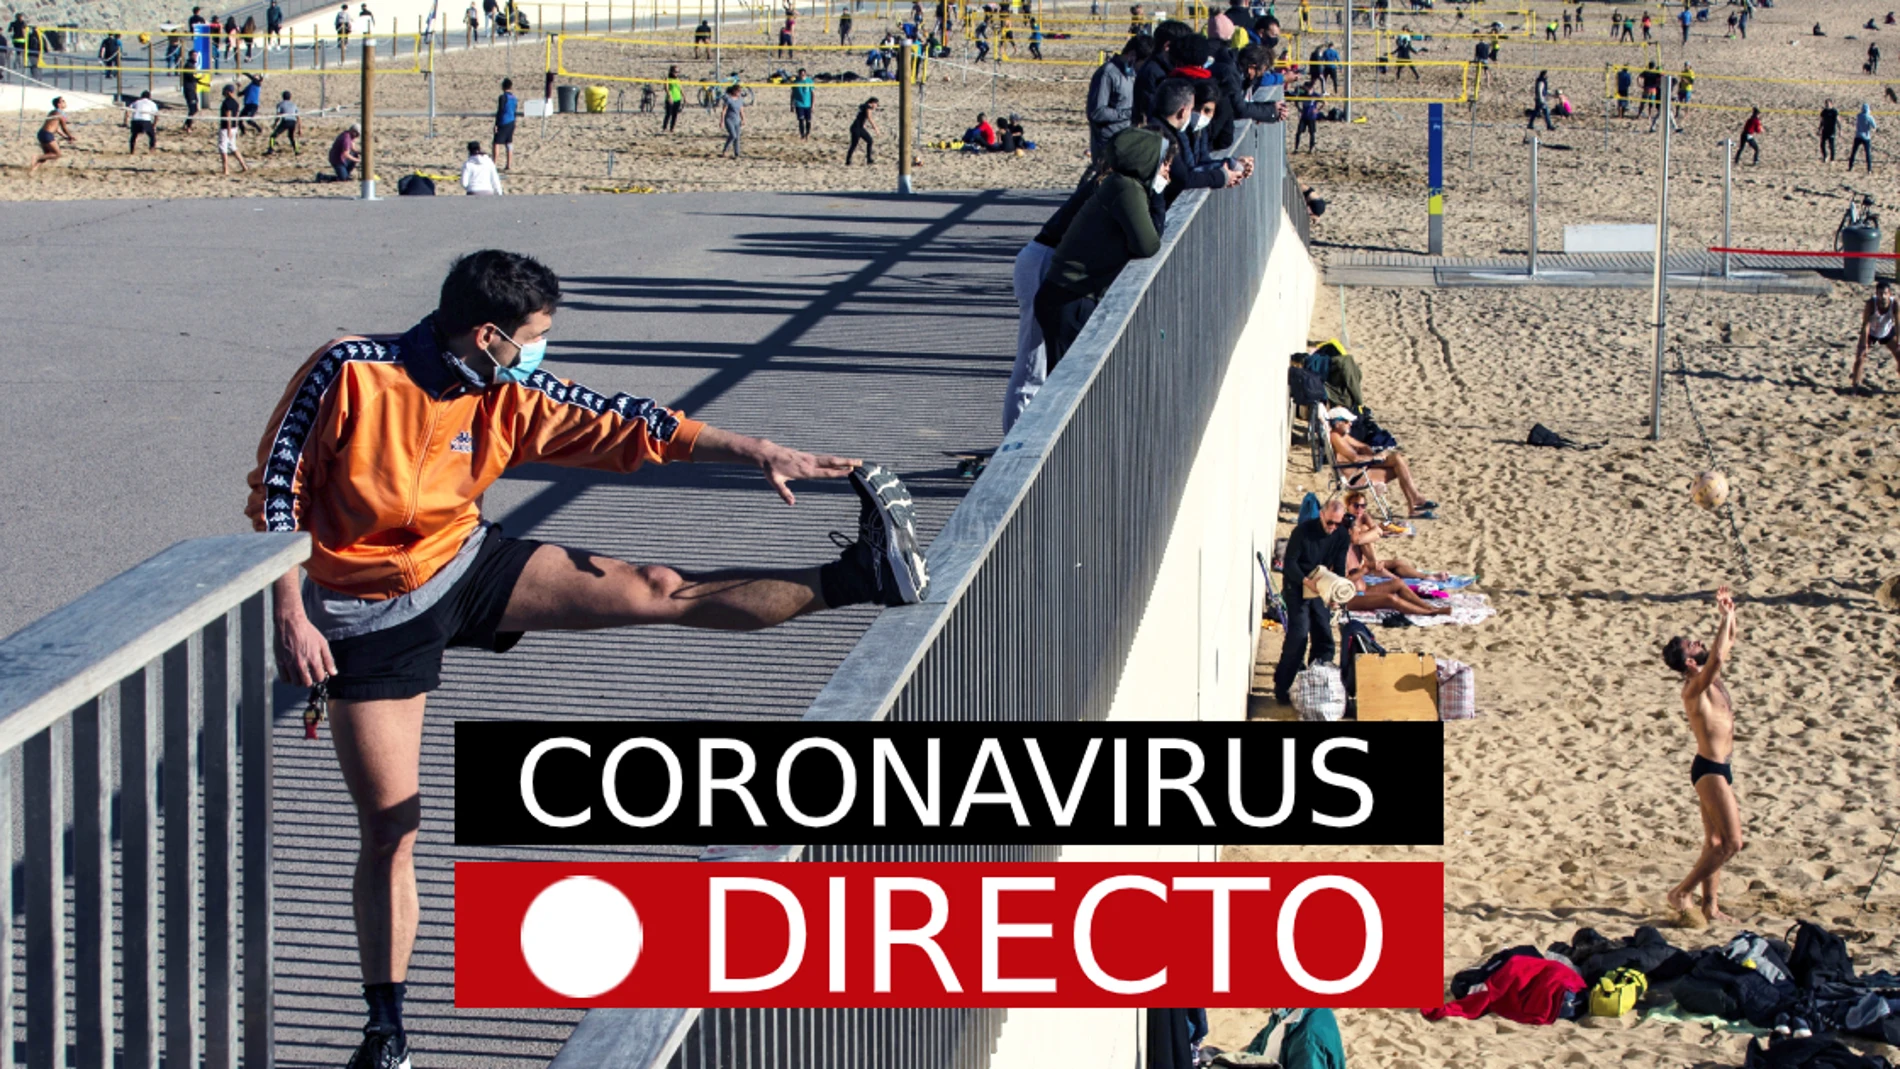 Última hora de coronavirus en España | Vacuna de COVID-19 y macrobrote en Mallorca, hoy